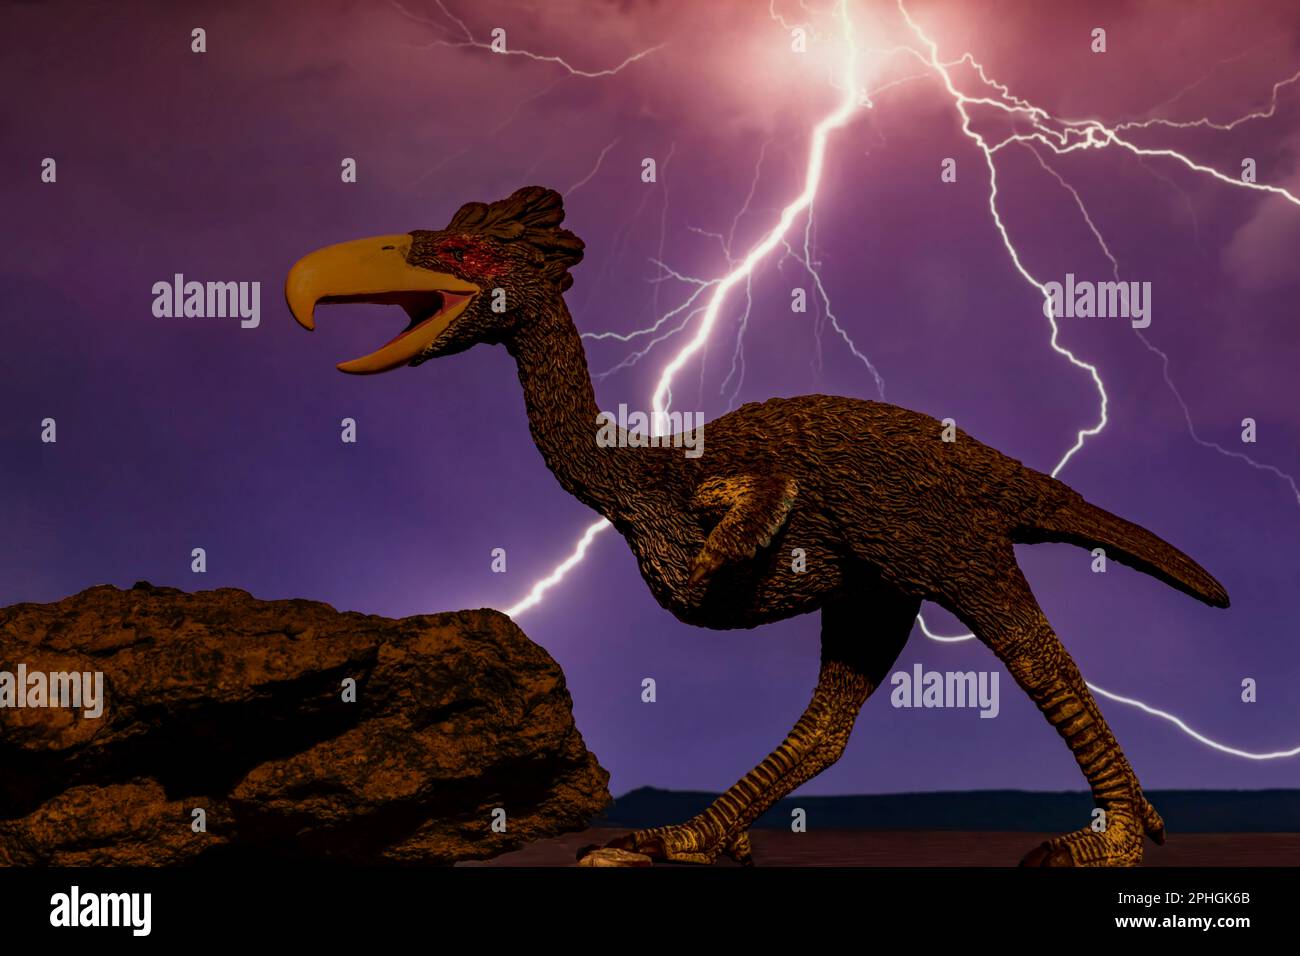 L'oiseau de terreur sud-américain est rendu plus terrifiant sur fond de tempête électrique d'un ciel Miocène, il y a 15 à 13 millions d'années. Banque D'Images